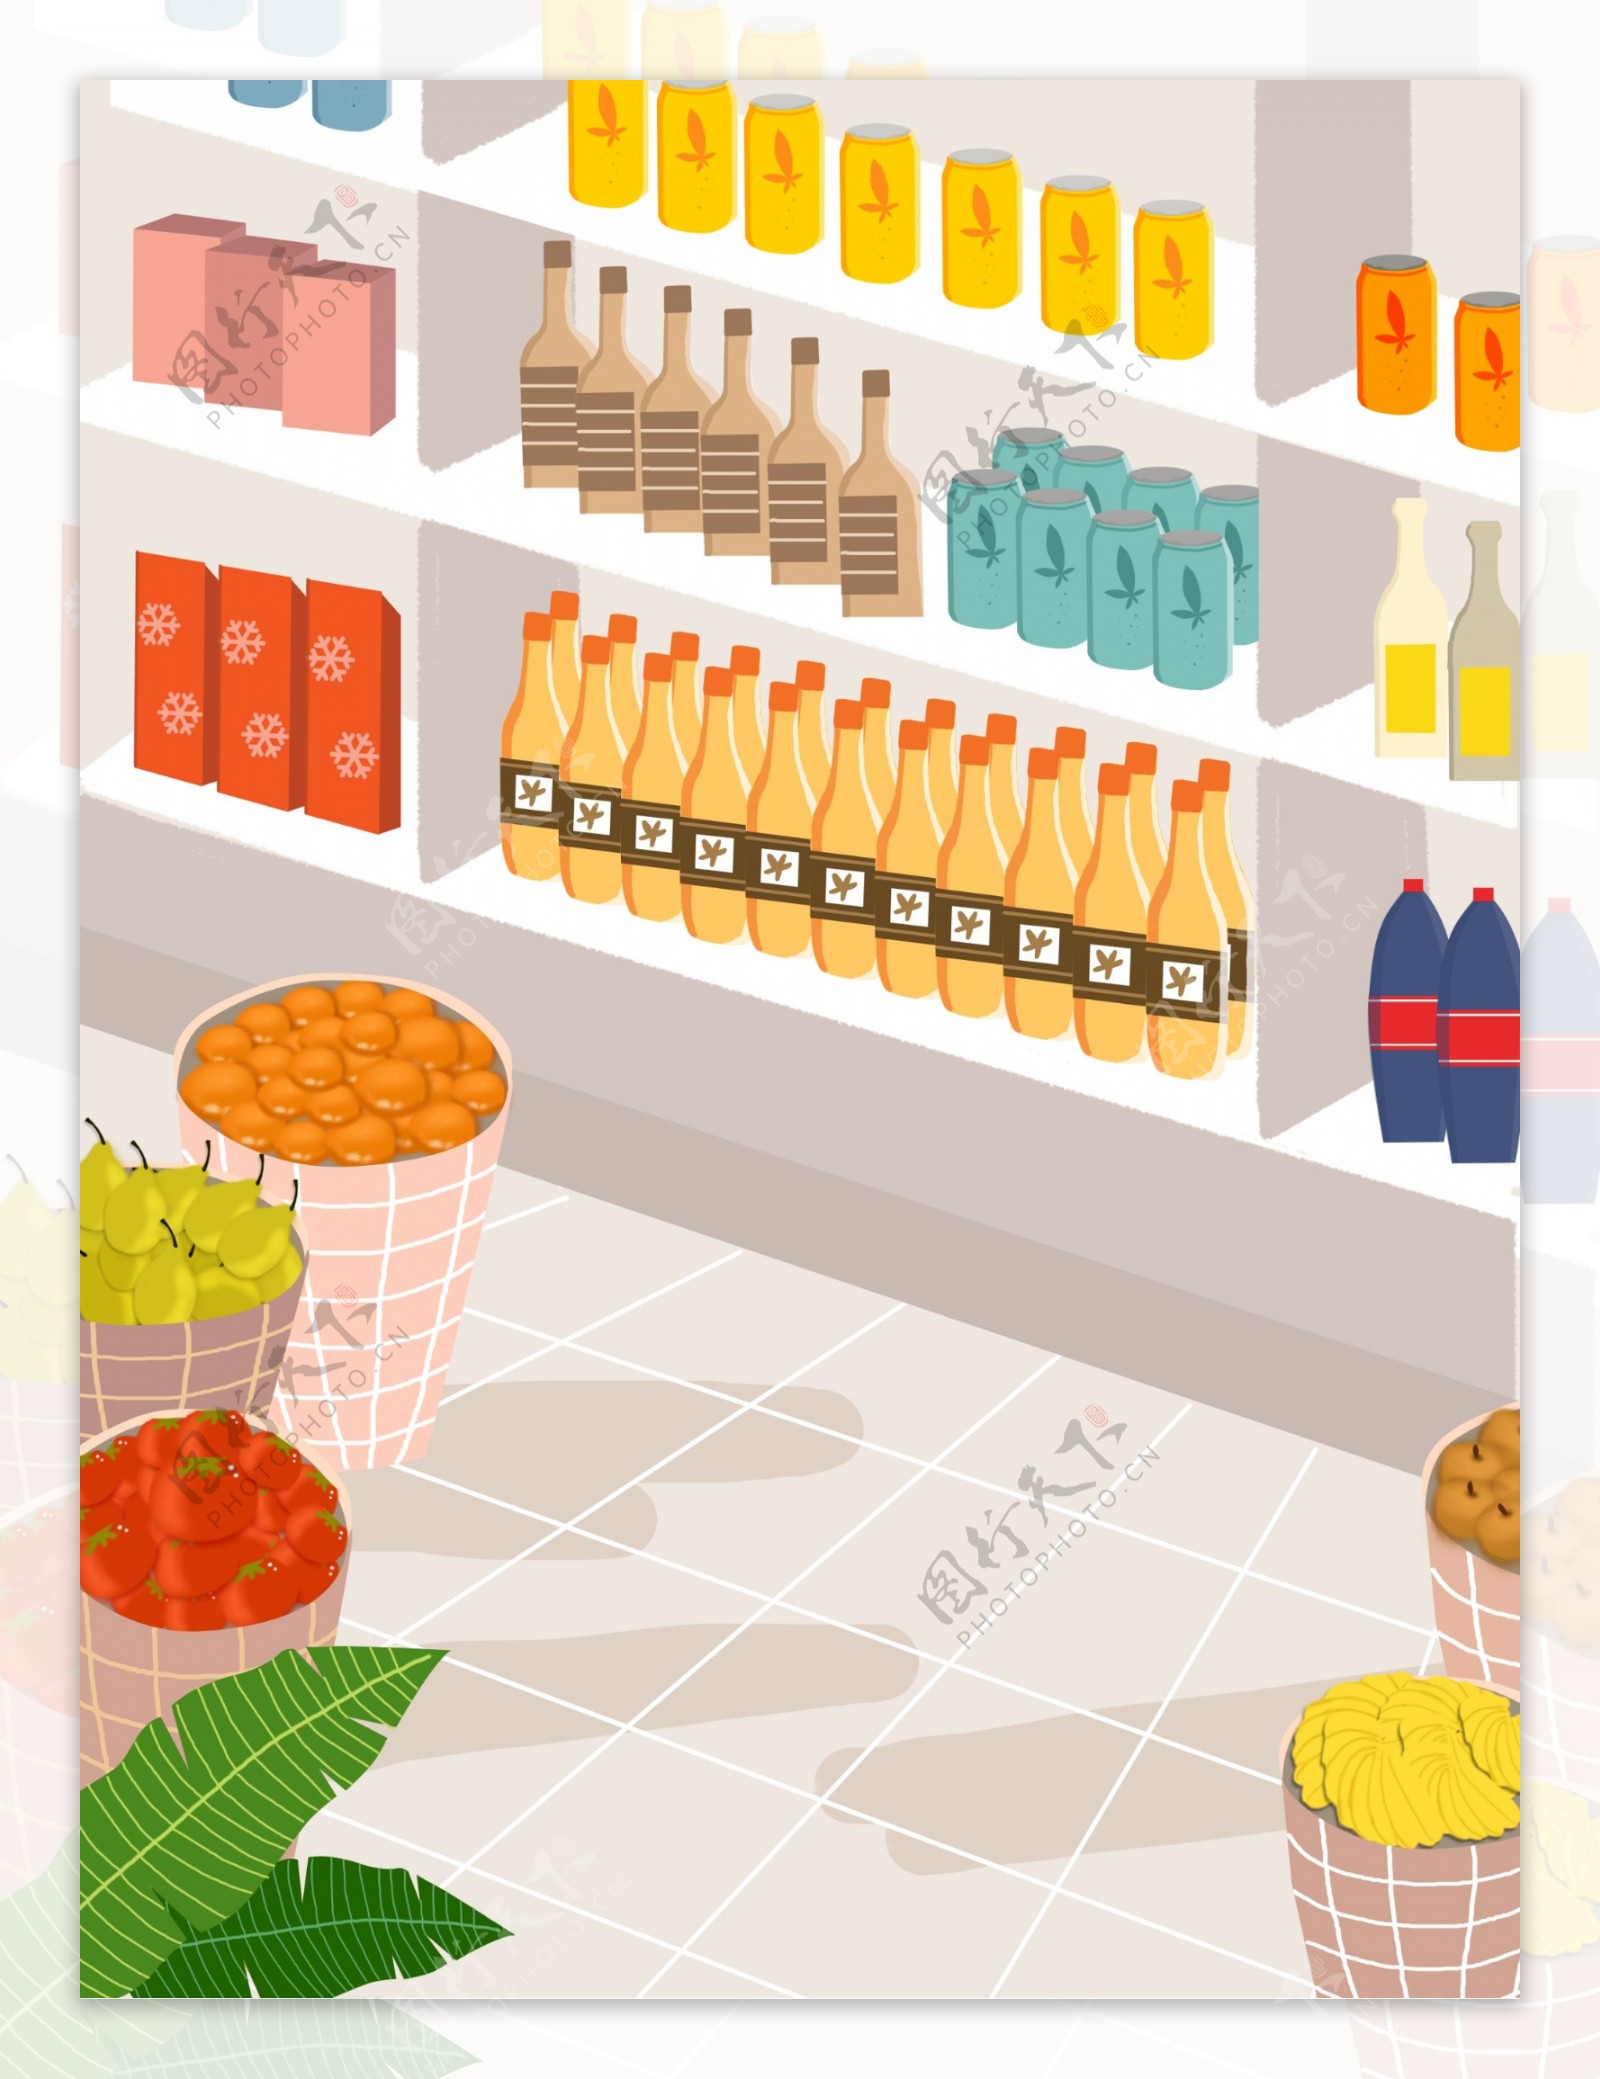 超市水果饮料货架货品背景设计